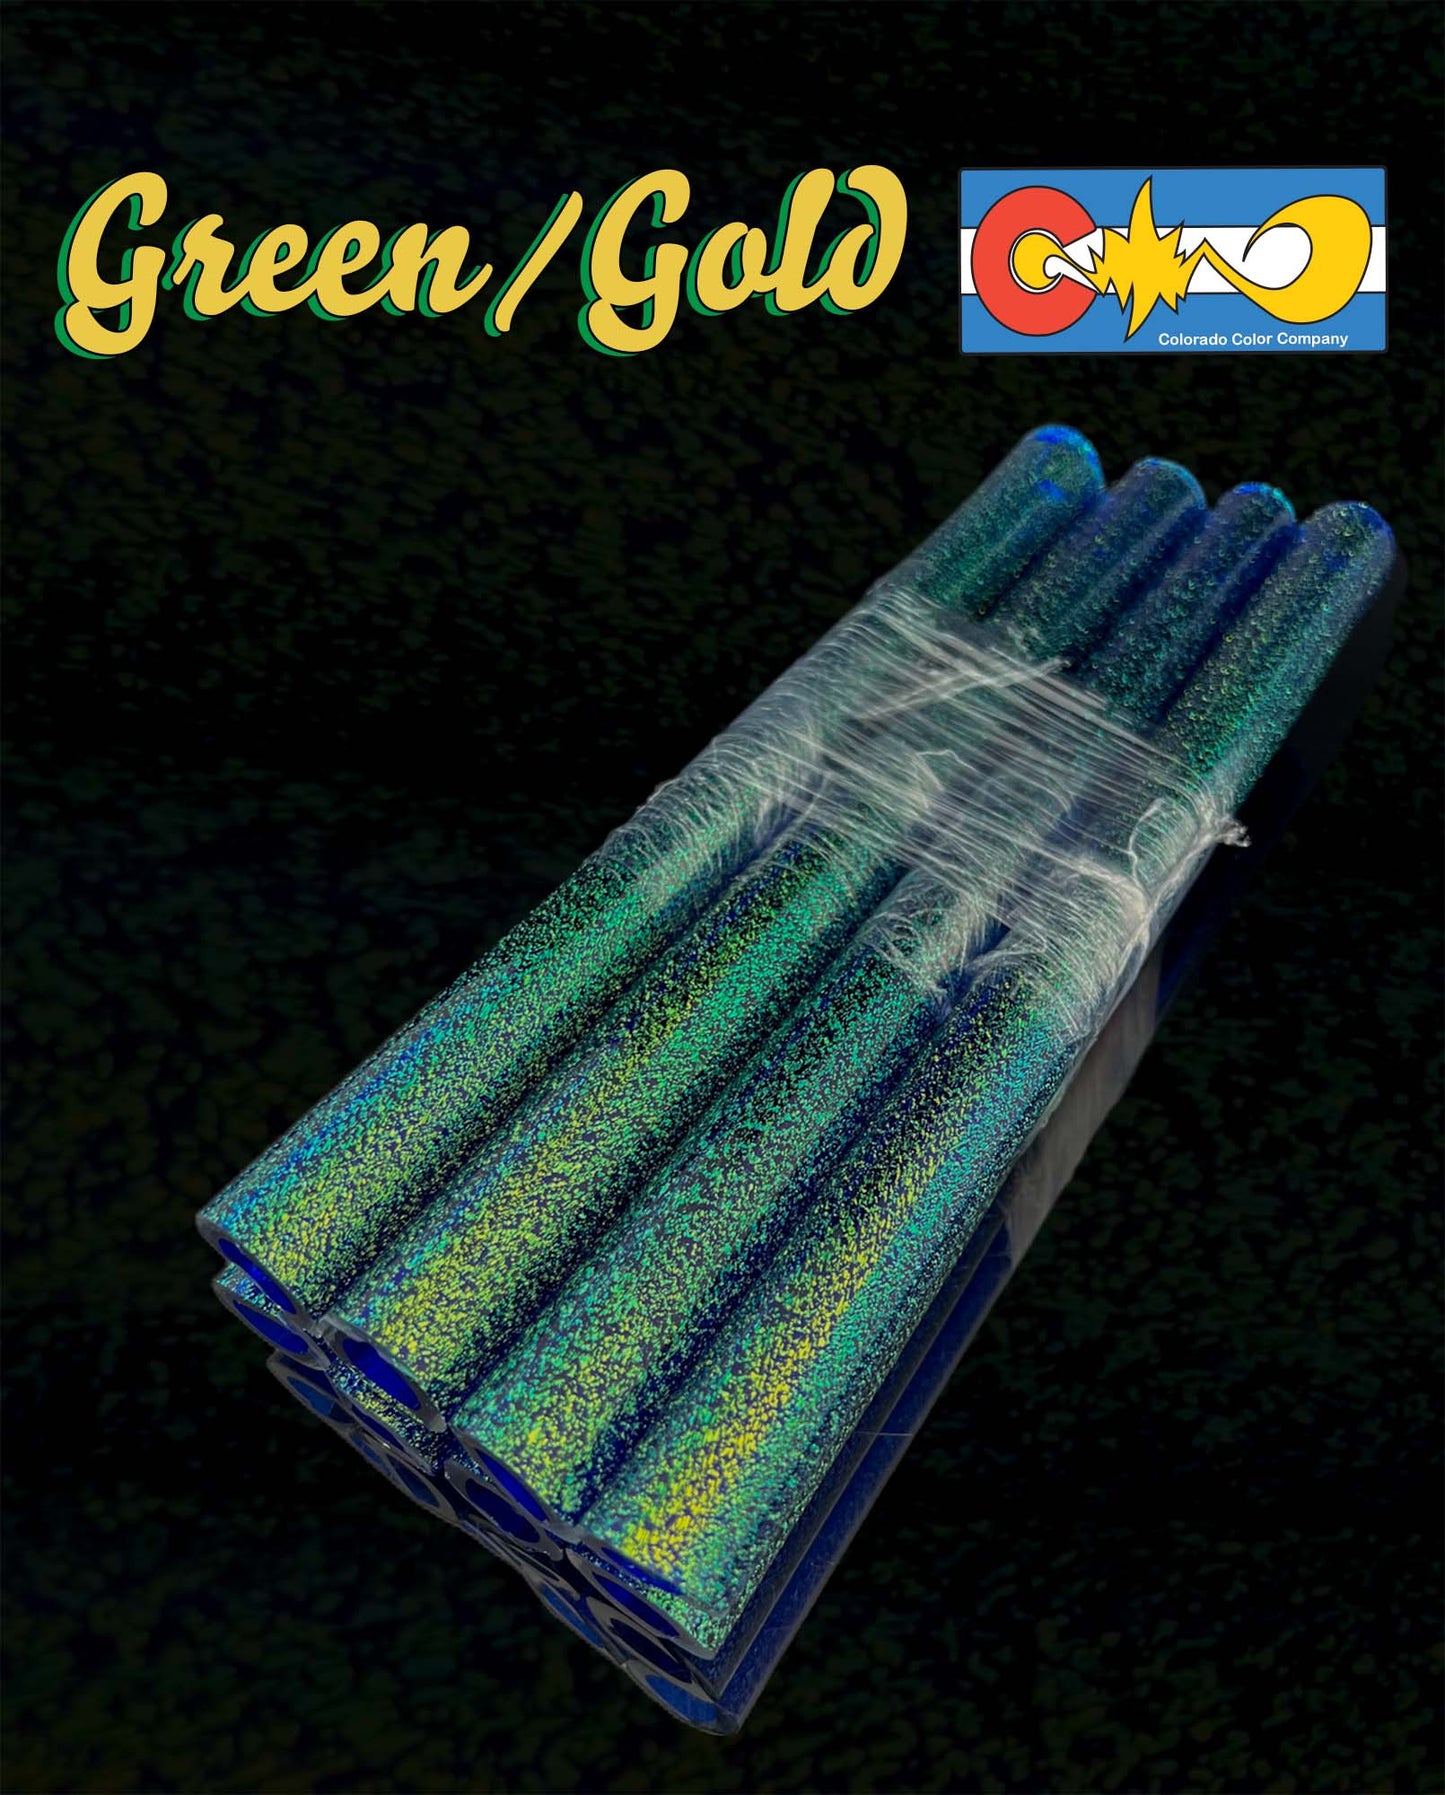 Dicroico verde/dorado - Capa central de cobalto - Vidrio de borosilicato